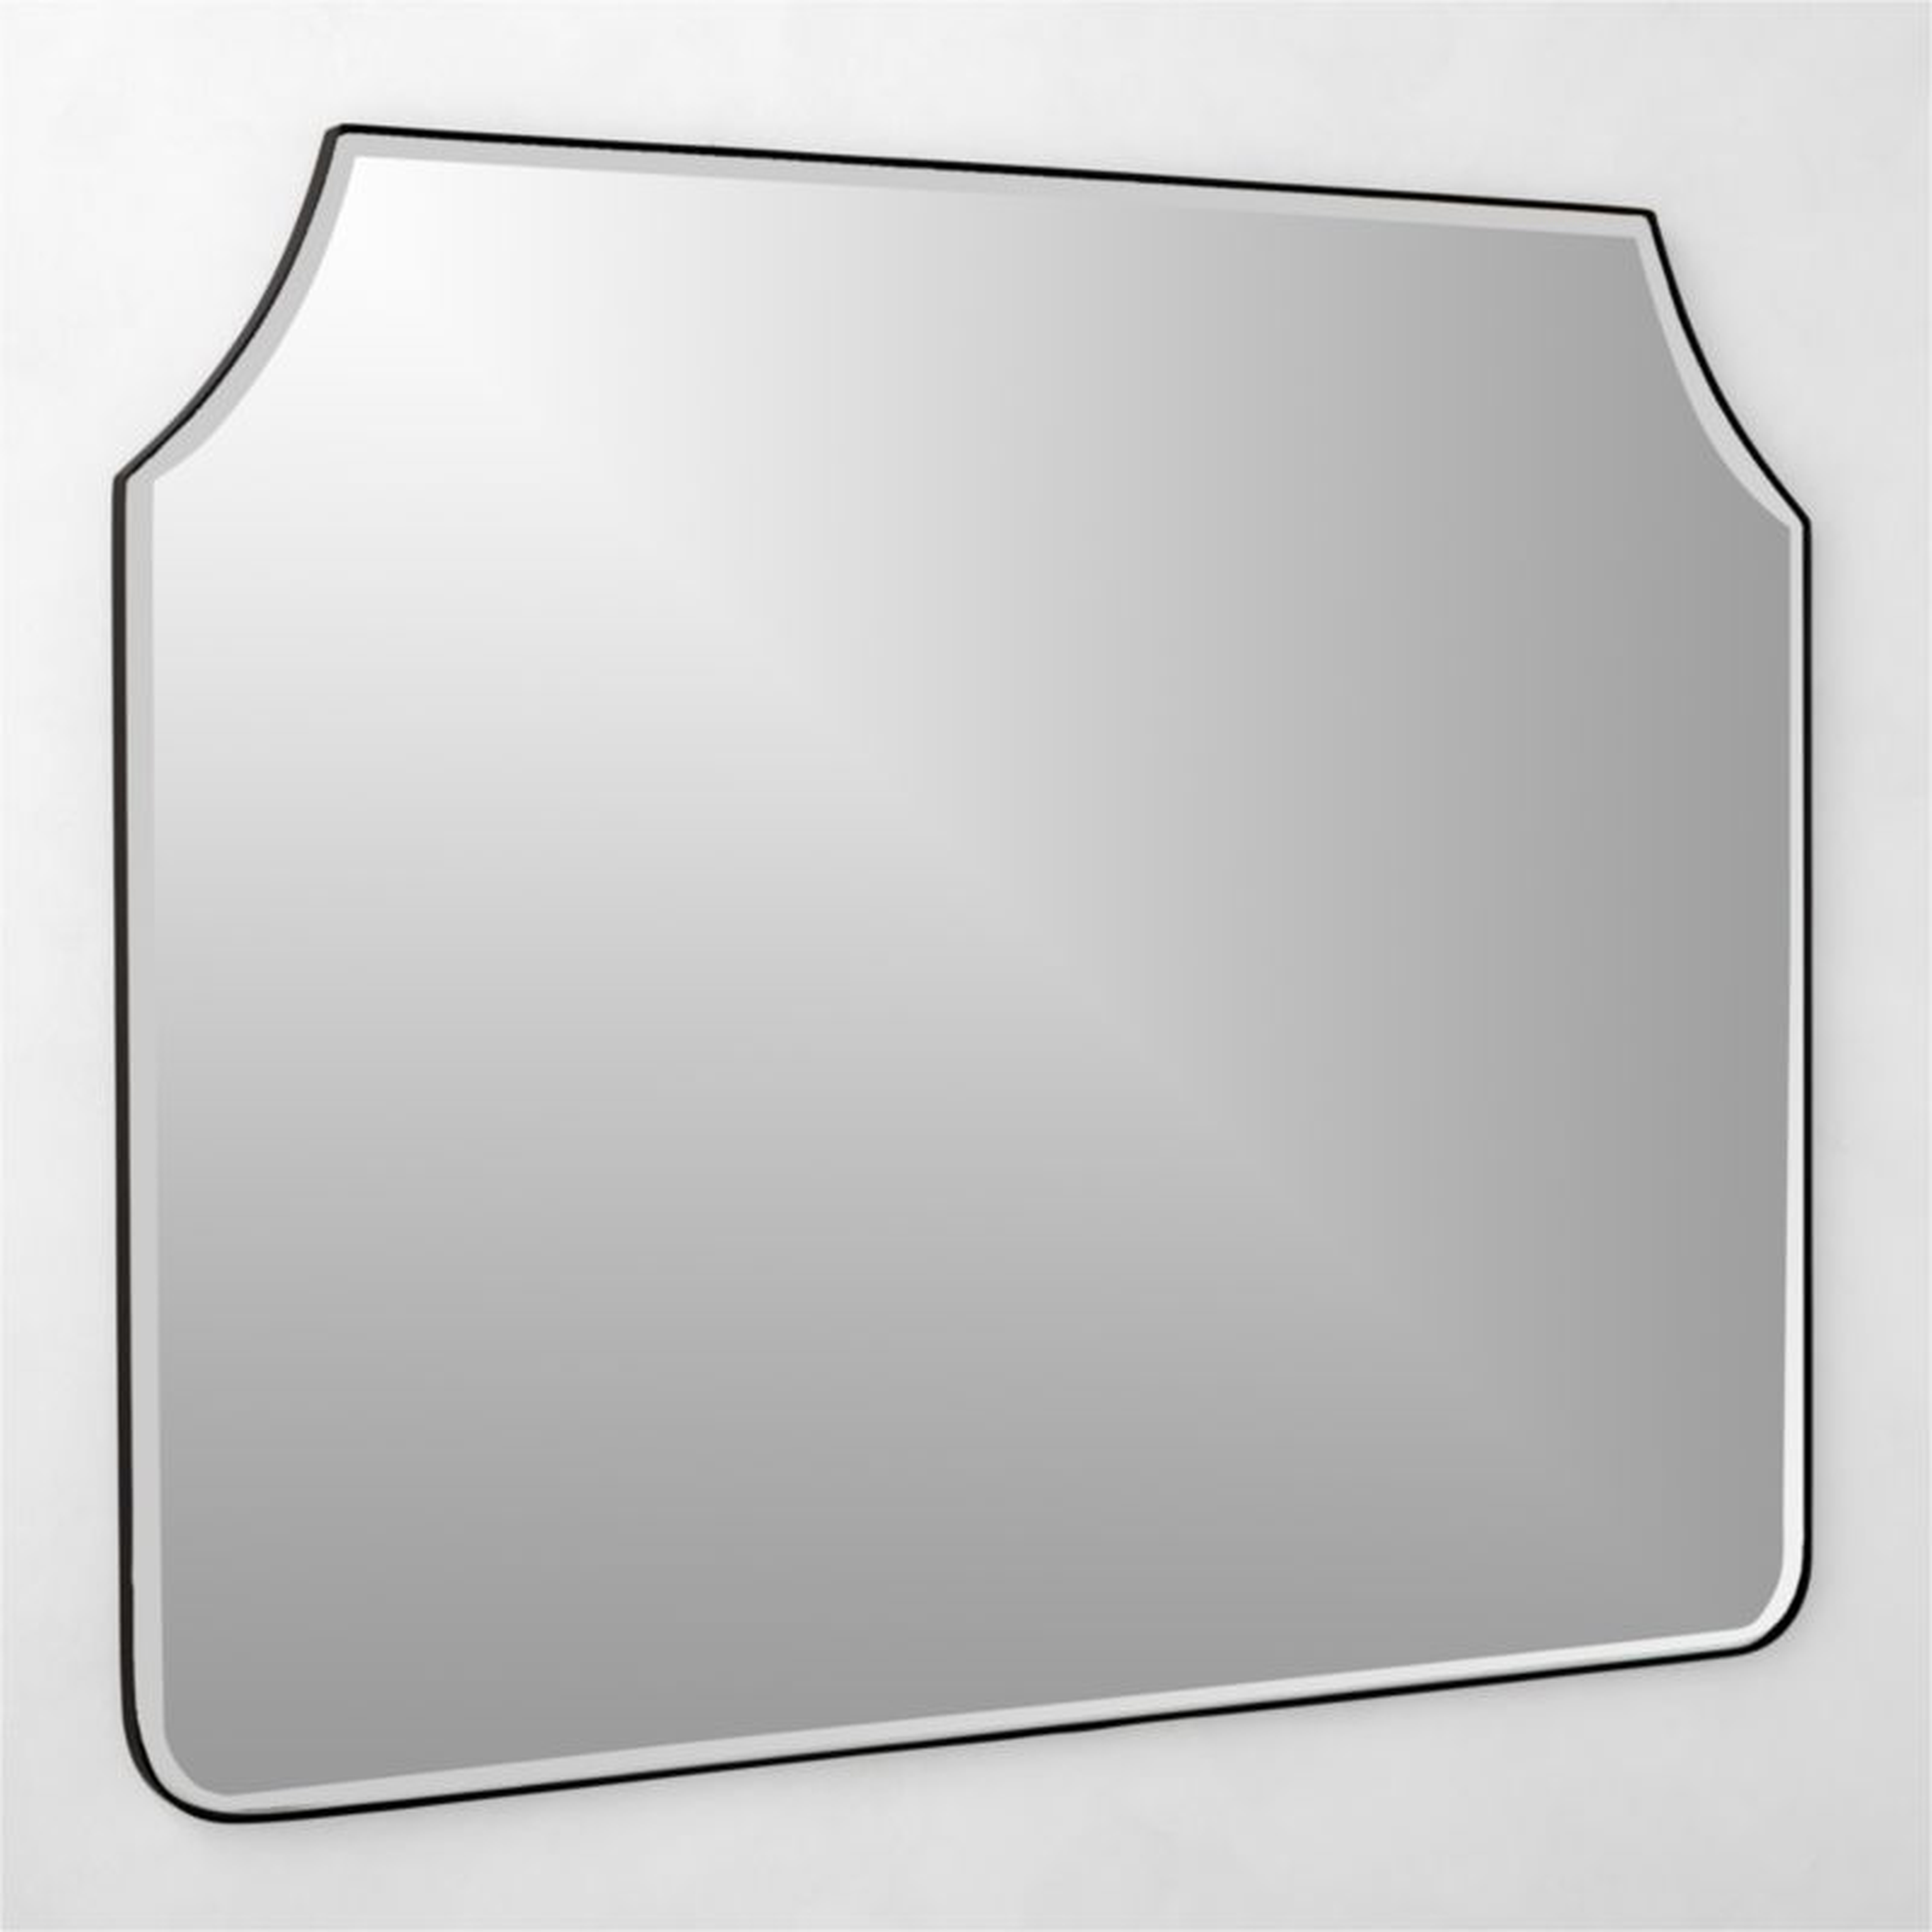 Kye Matte Black Mantel Mirror 46"x37" - CB2